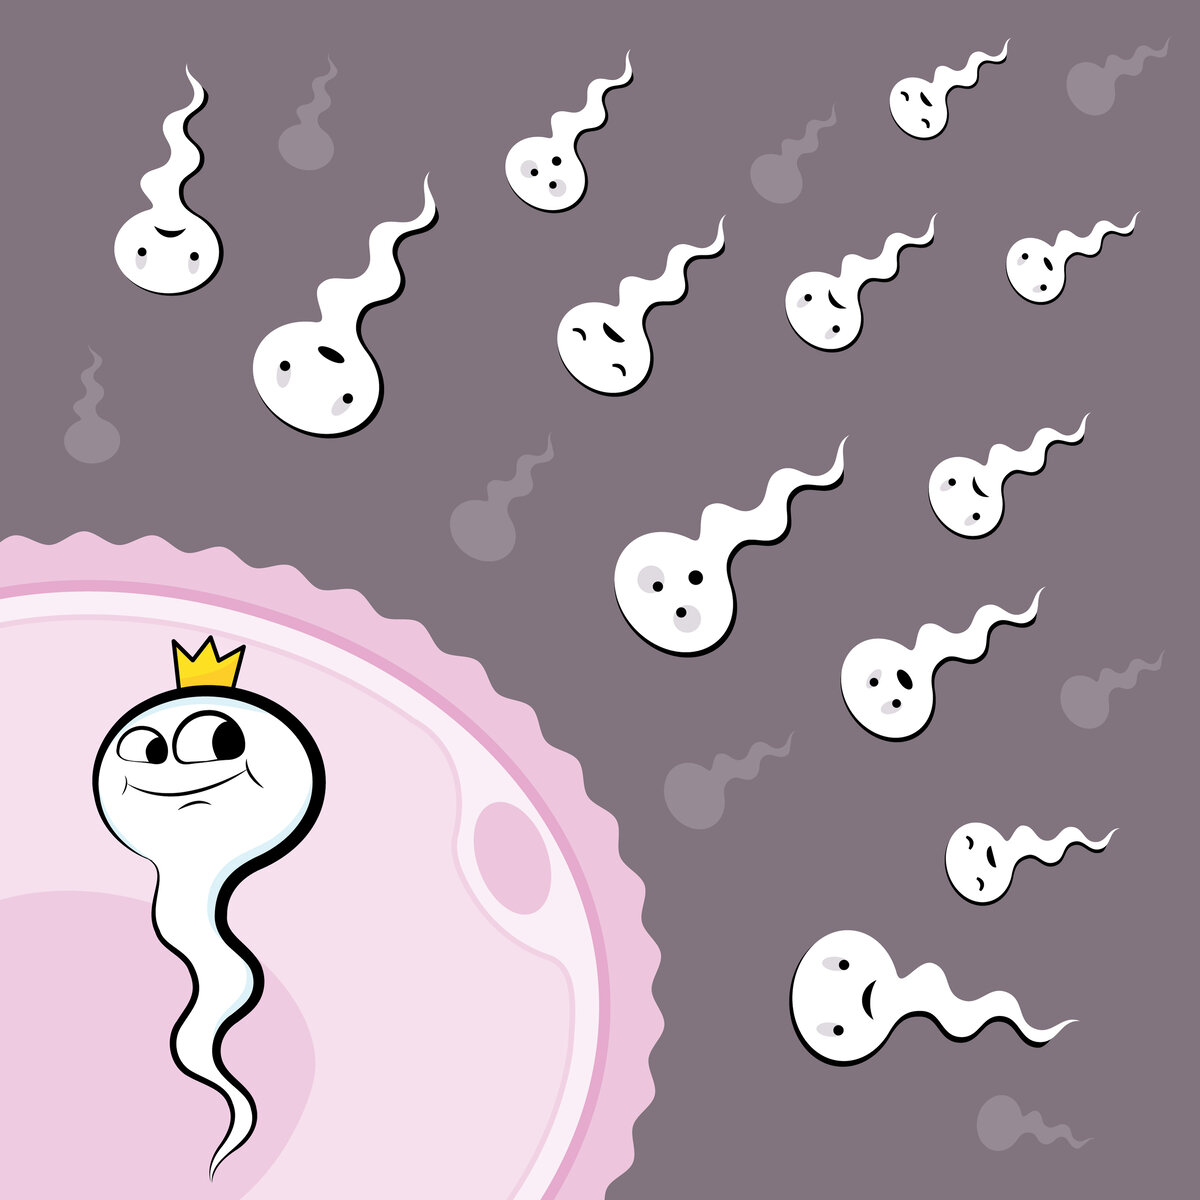 Еще 5 фактов про sперму, которых вы точно не знали